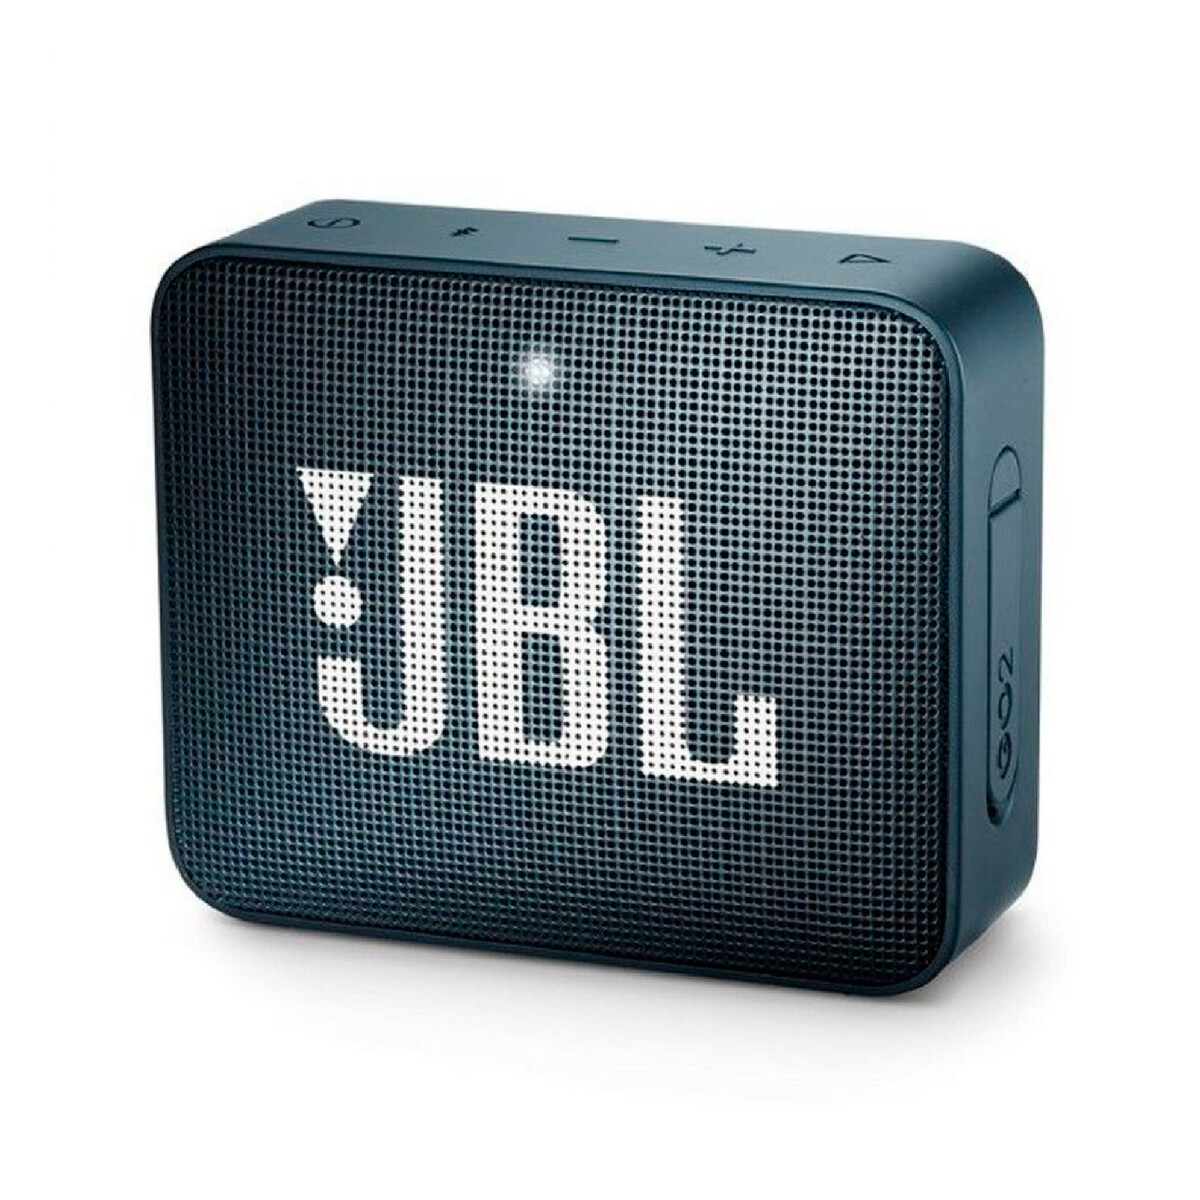 Parlante Portátil Bluetooth Jbl Go 2 Navy 